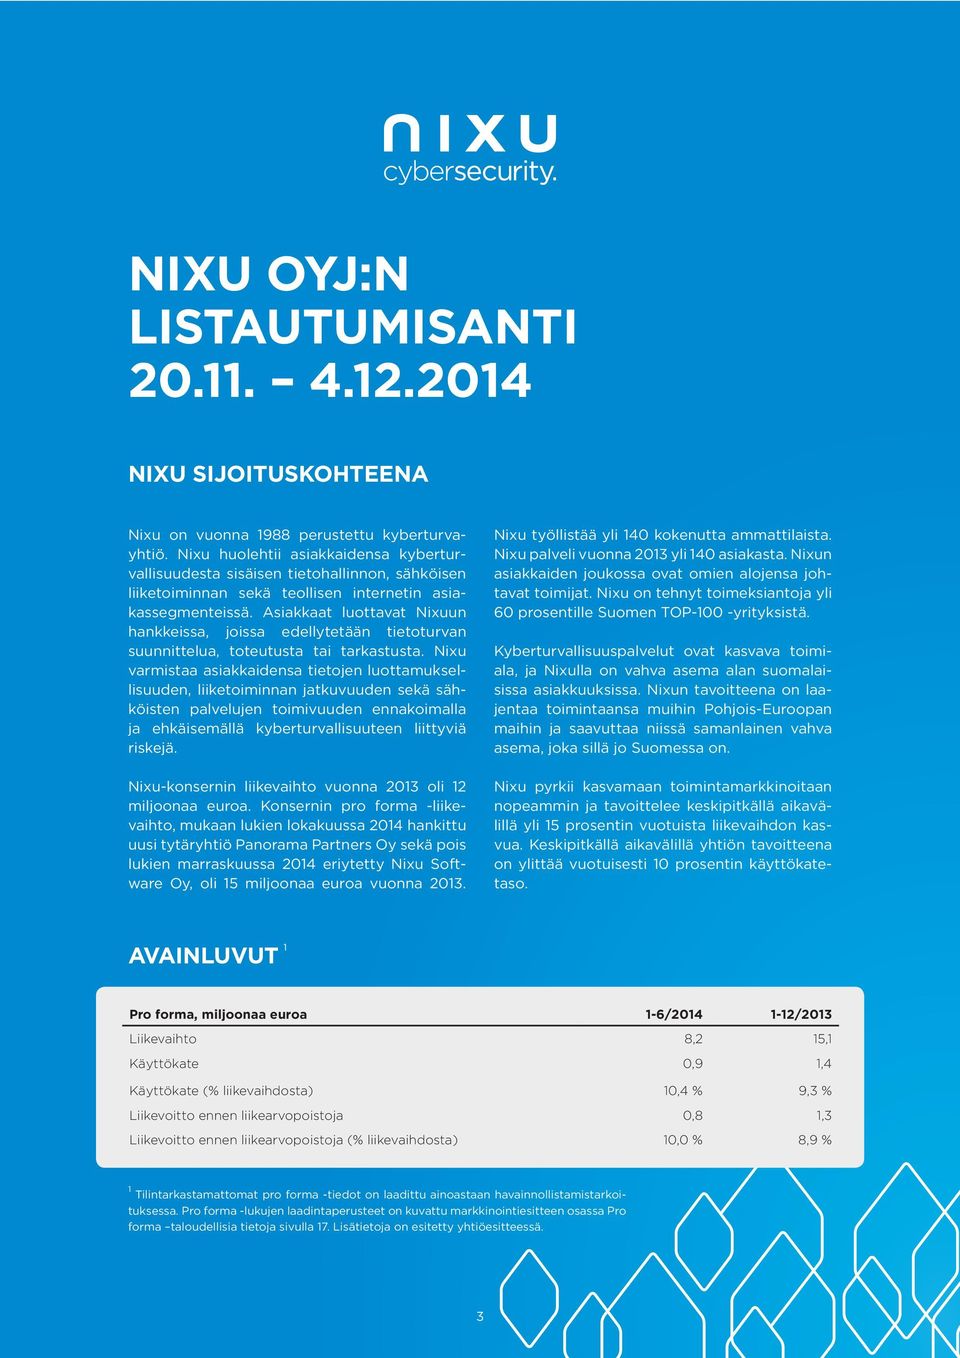 Asiakkaat luottavat Nixuun hankkeissa, joissa edellytetään tietoturvan suunnittelua, toteutusta tai tarkastusta.